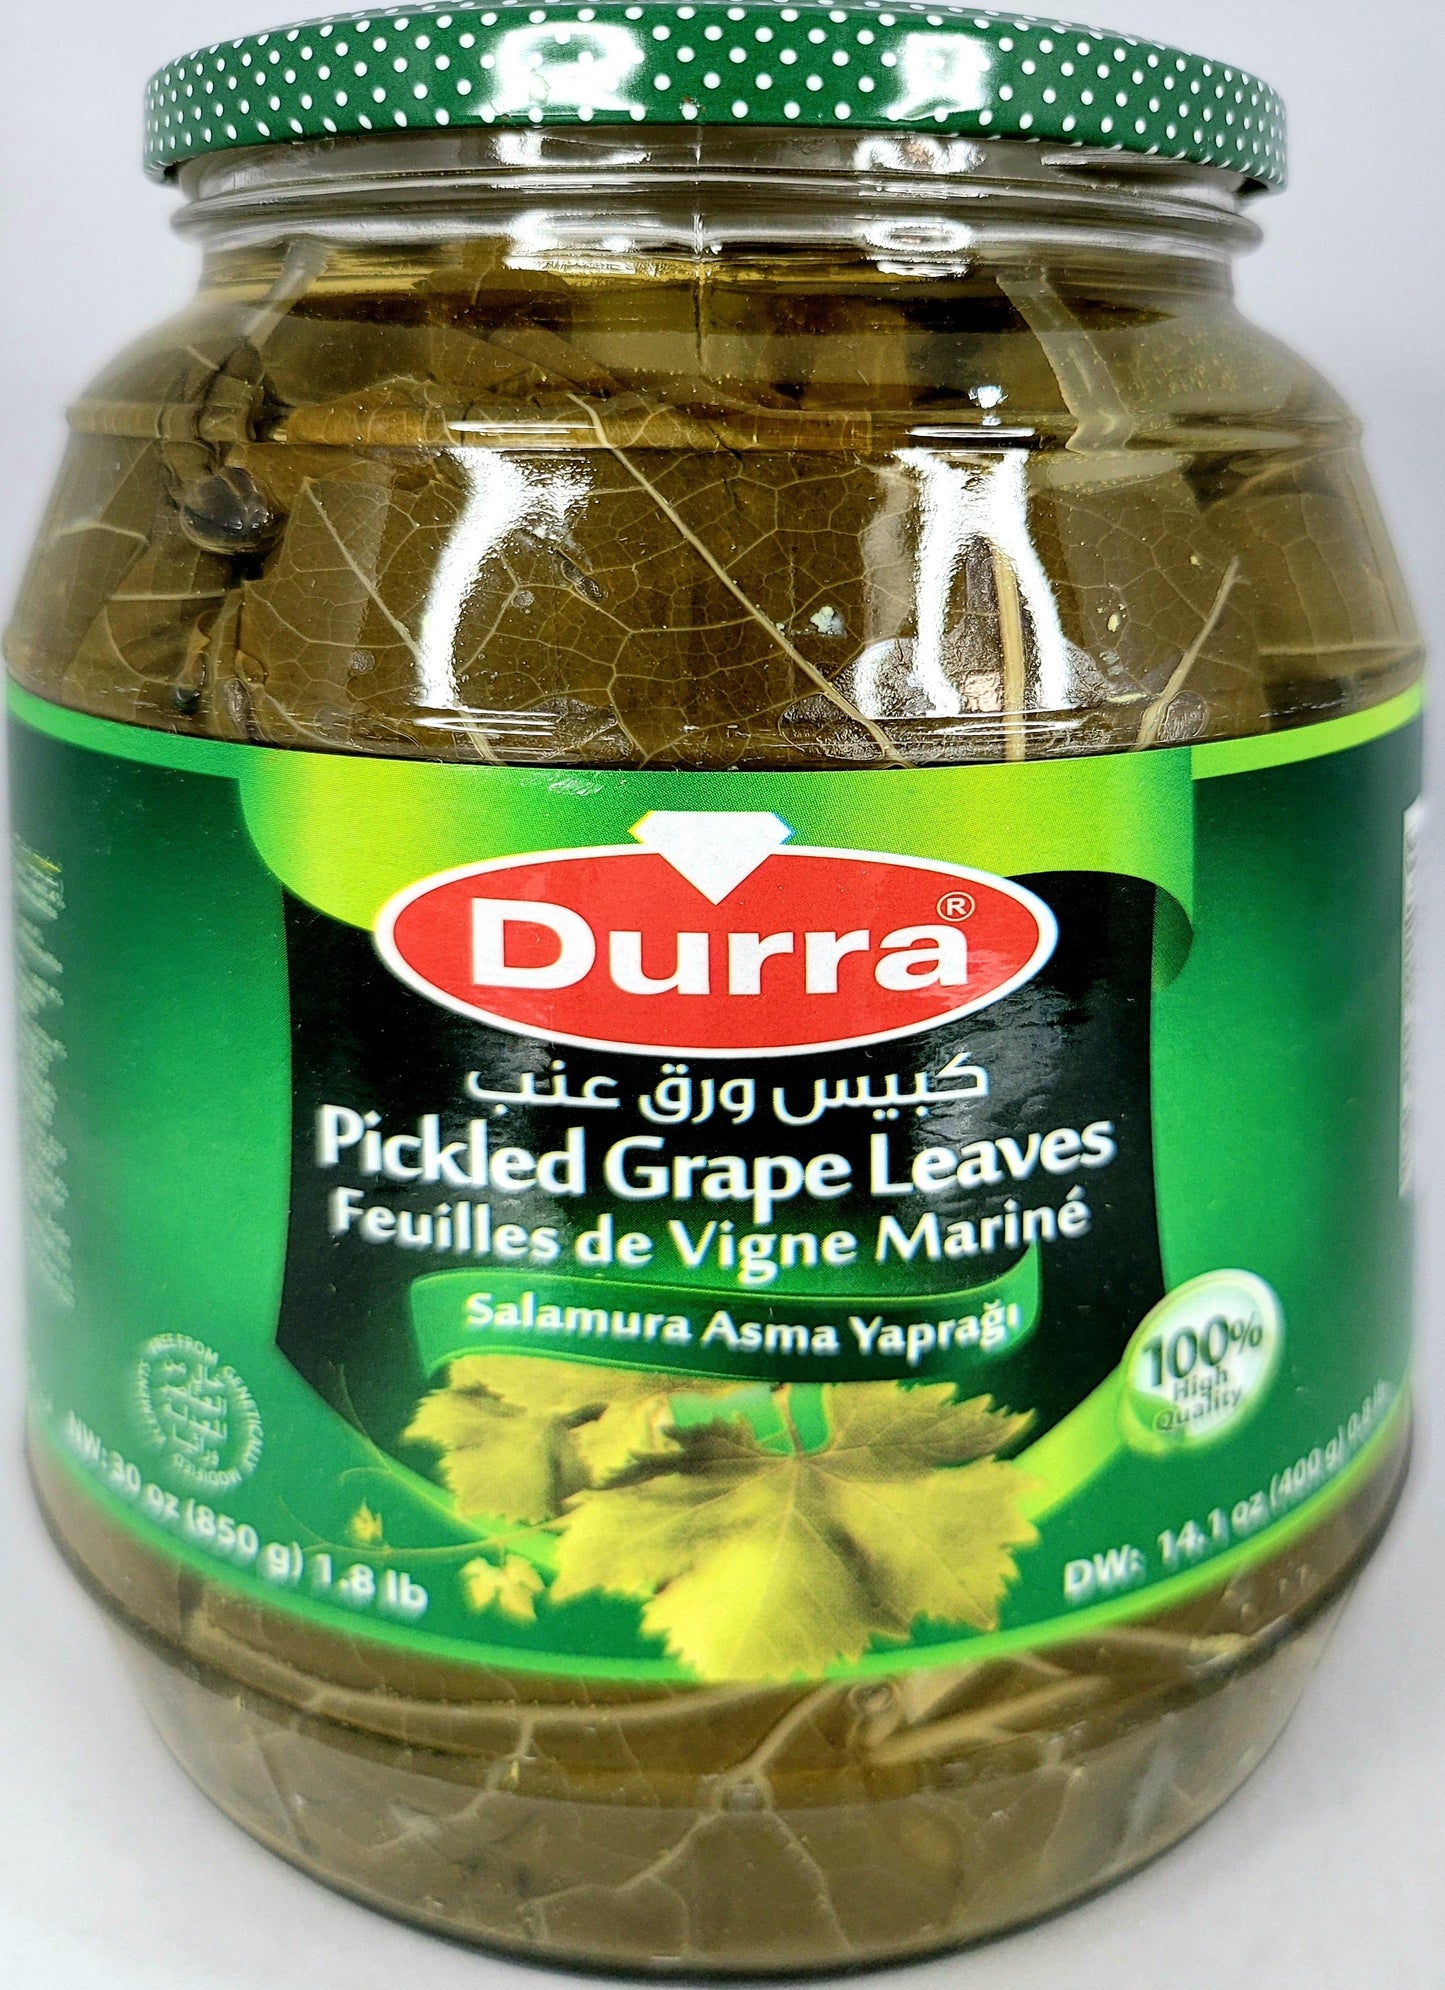 Durra Pickled Grape Leaves 850g (400g net) - Arabian Shopping Zone